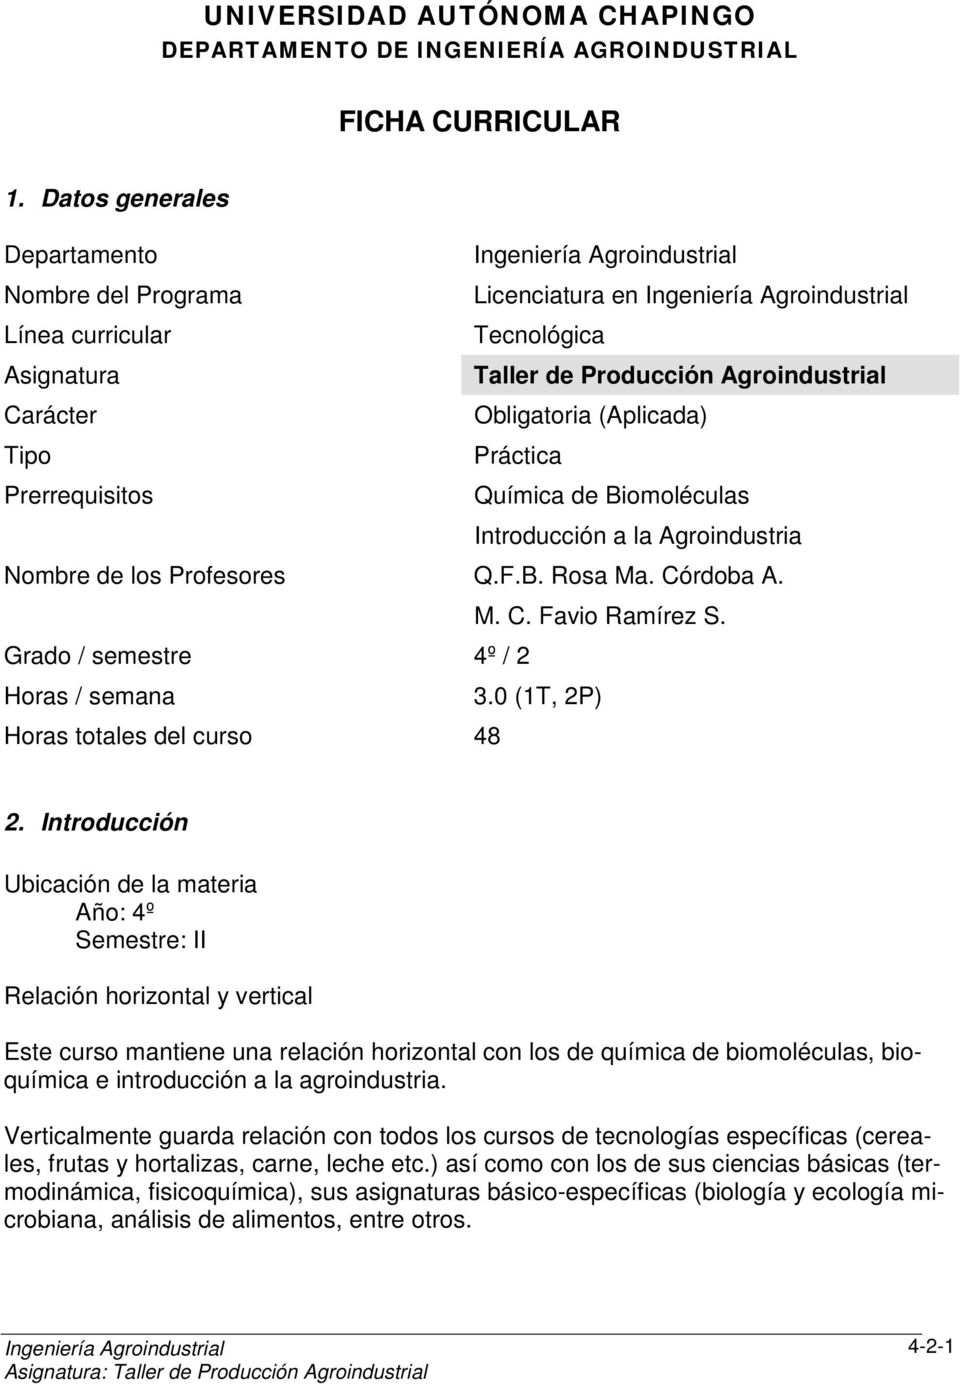 Prerrequisitos Química de Biomoléculas Introducción a la Agroindustria Nombre de los Profesores Q.F.B. Rosa Ma. Córdoba A. M. C. Favio Ramírez S. Grado / semestre 4º / 2 Horas / semana 3.